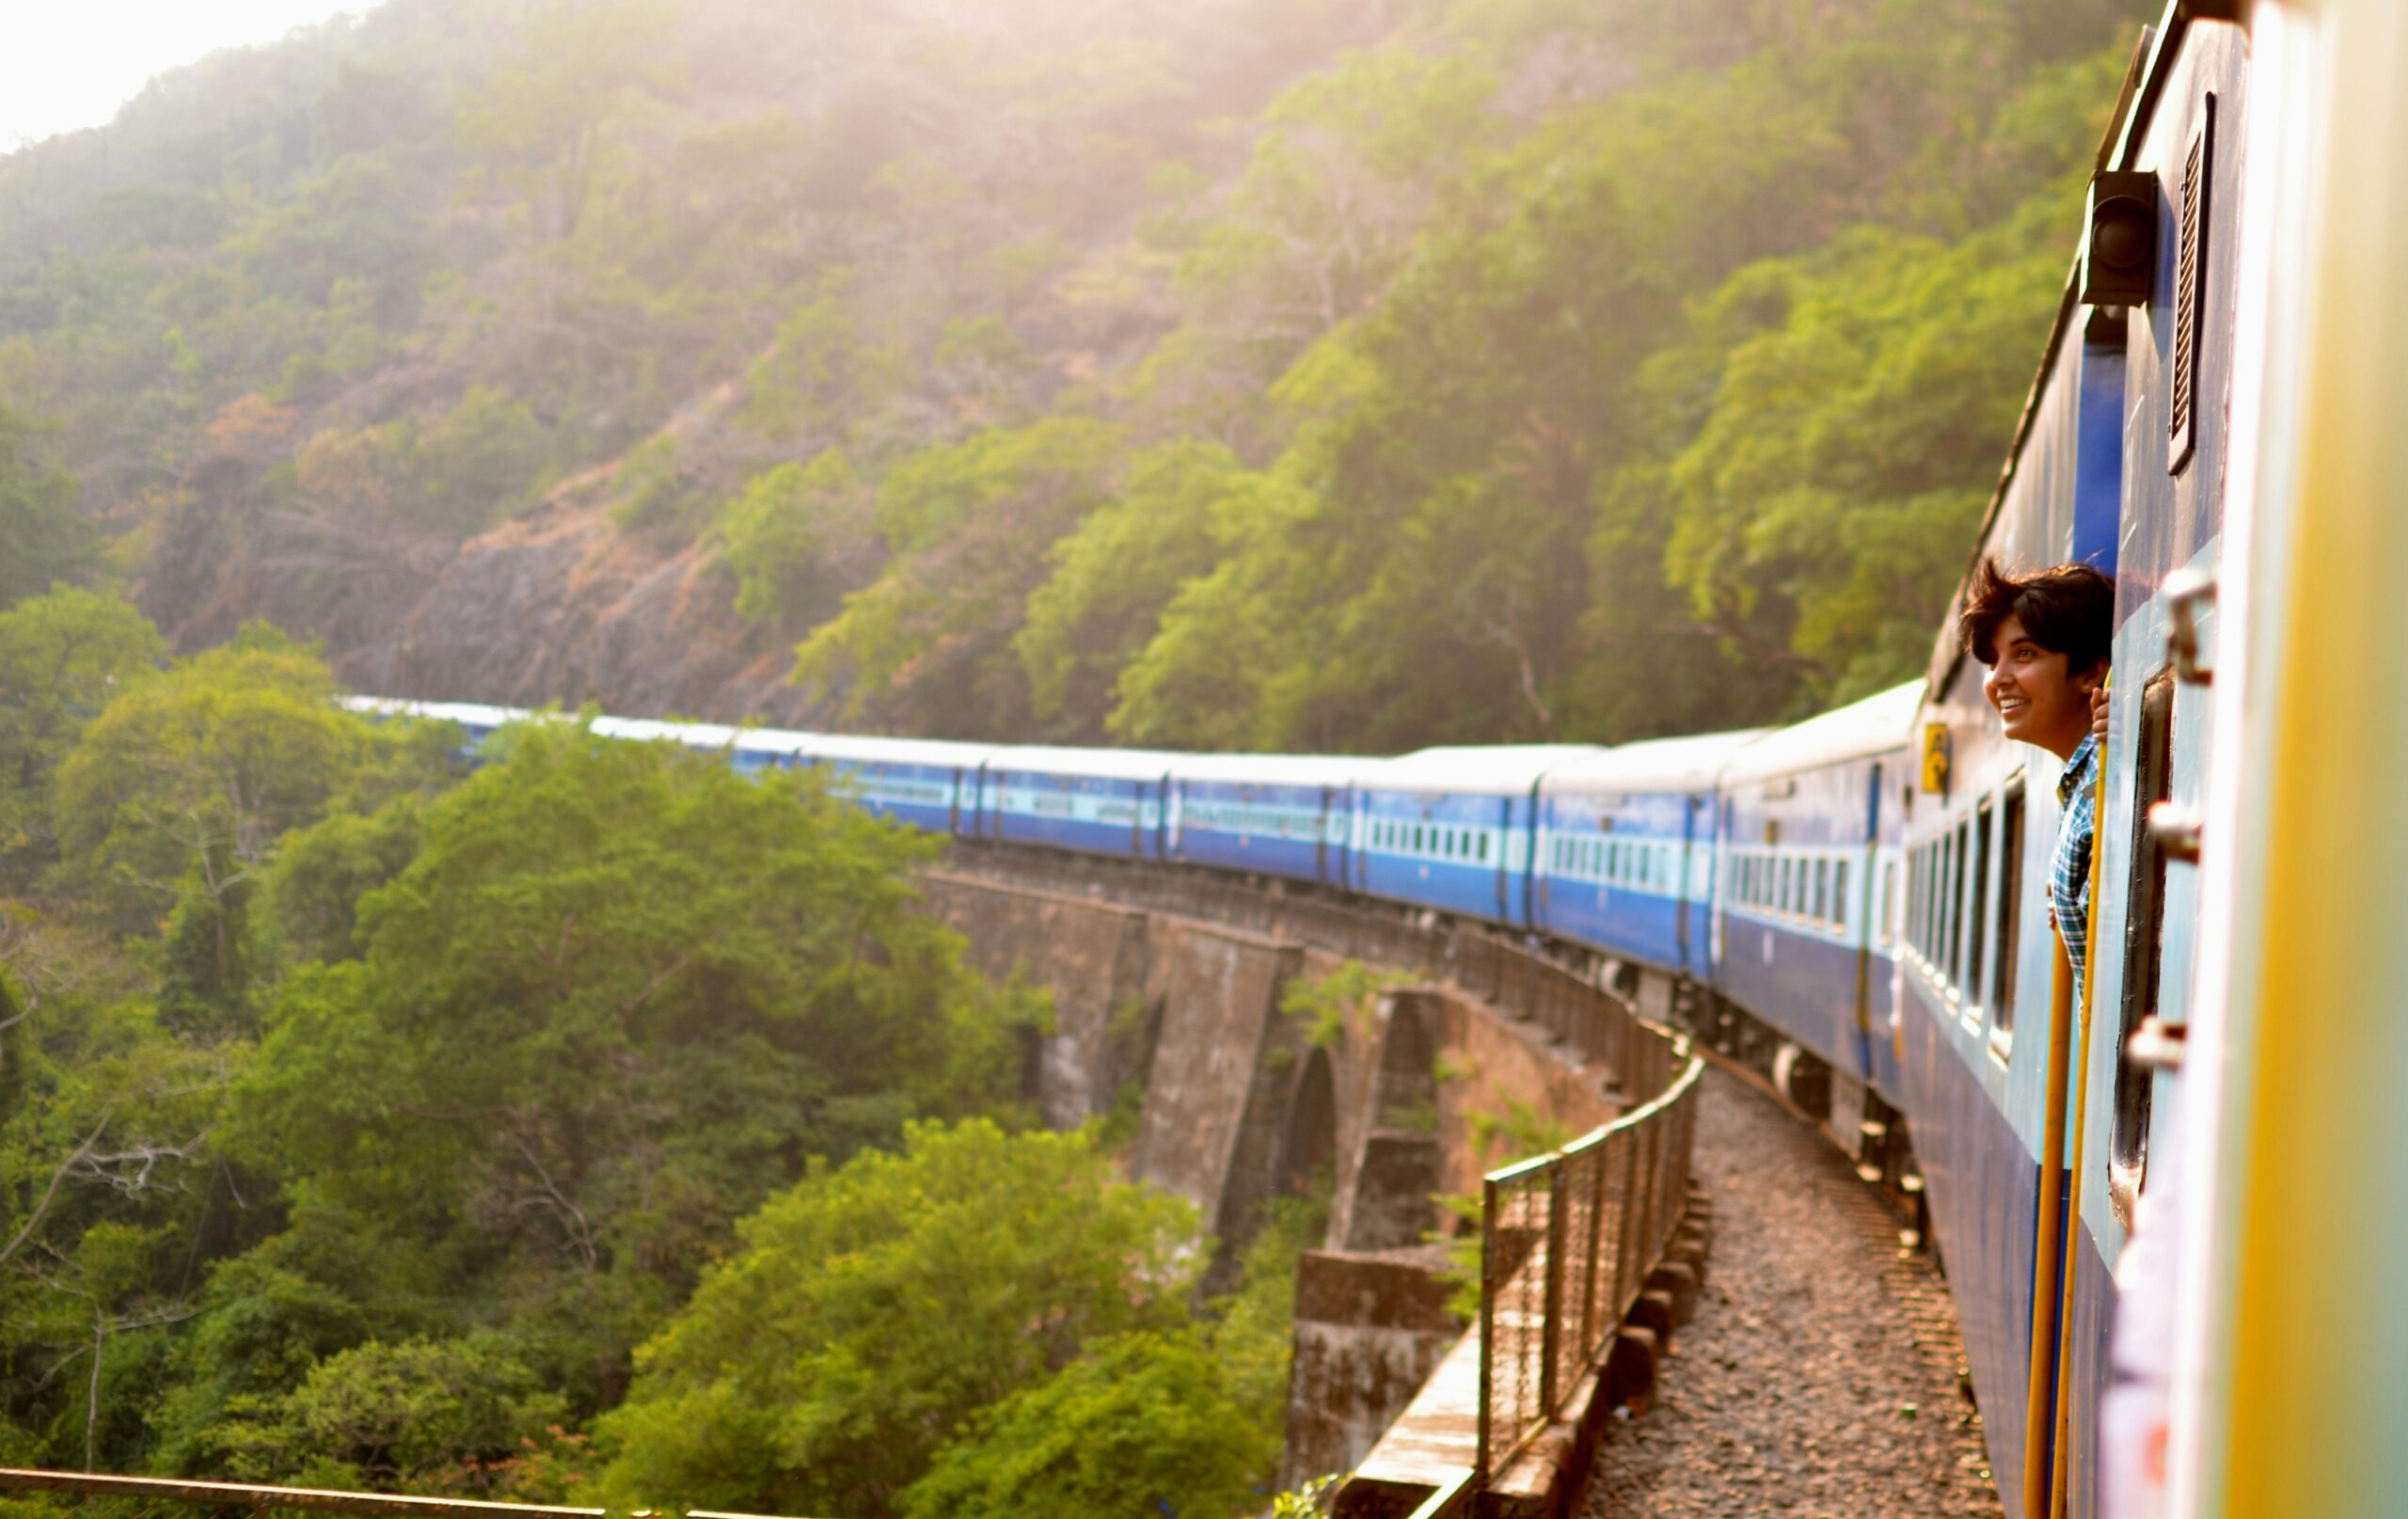 Viaggiare in treno è la nuova frontiera del turismo sostenibile e di qualità